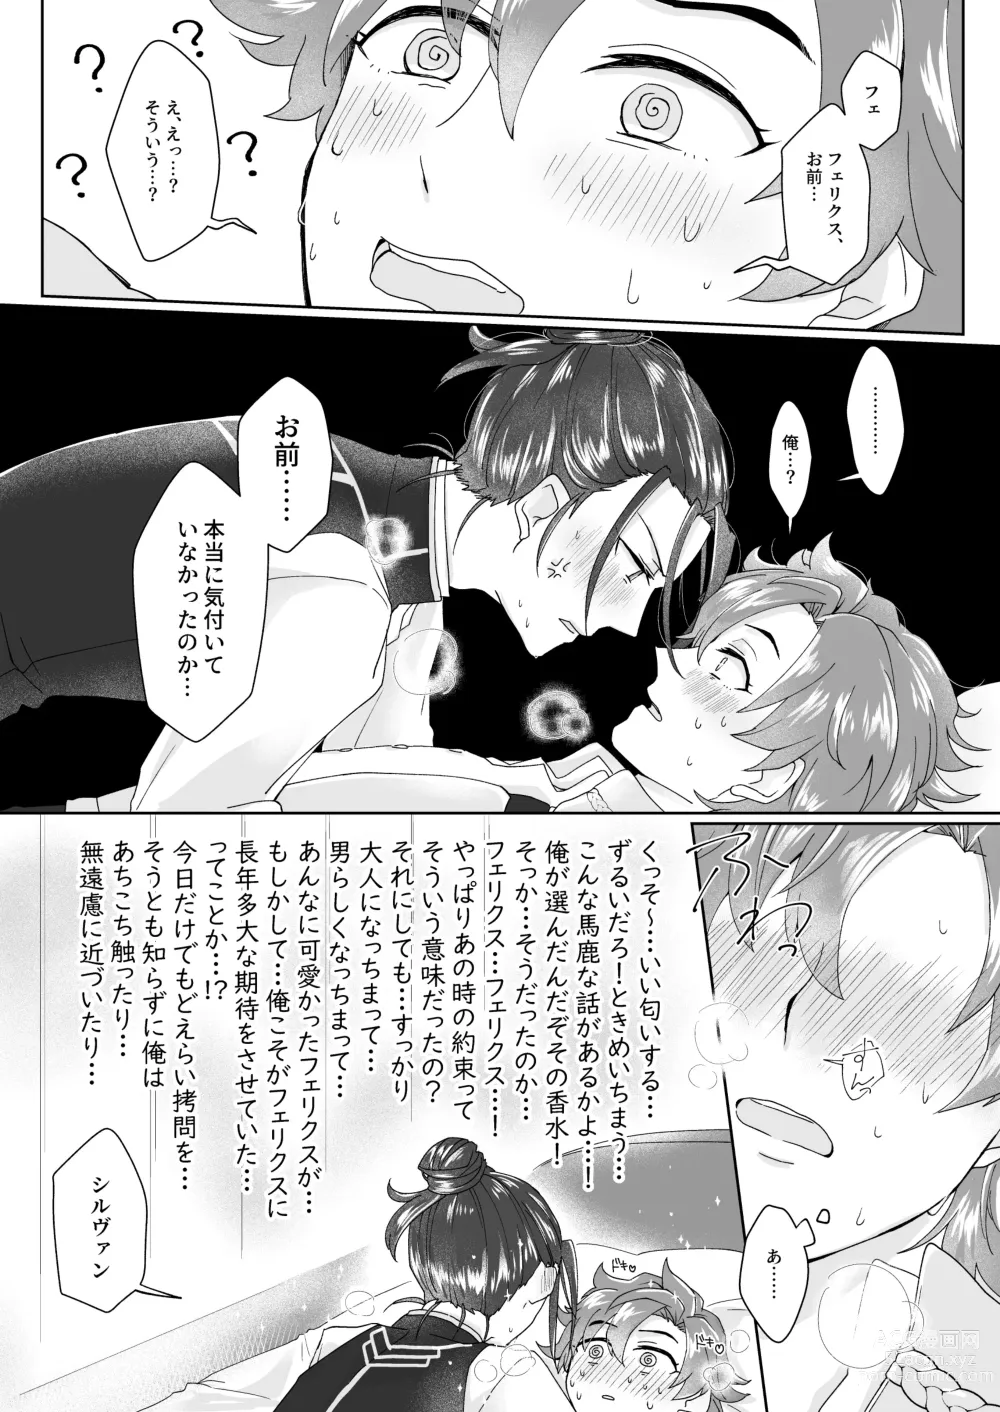 Page 13 of doujinshi Hito no Ki mo Shiranaide!